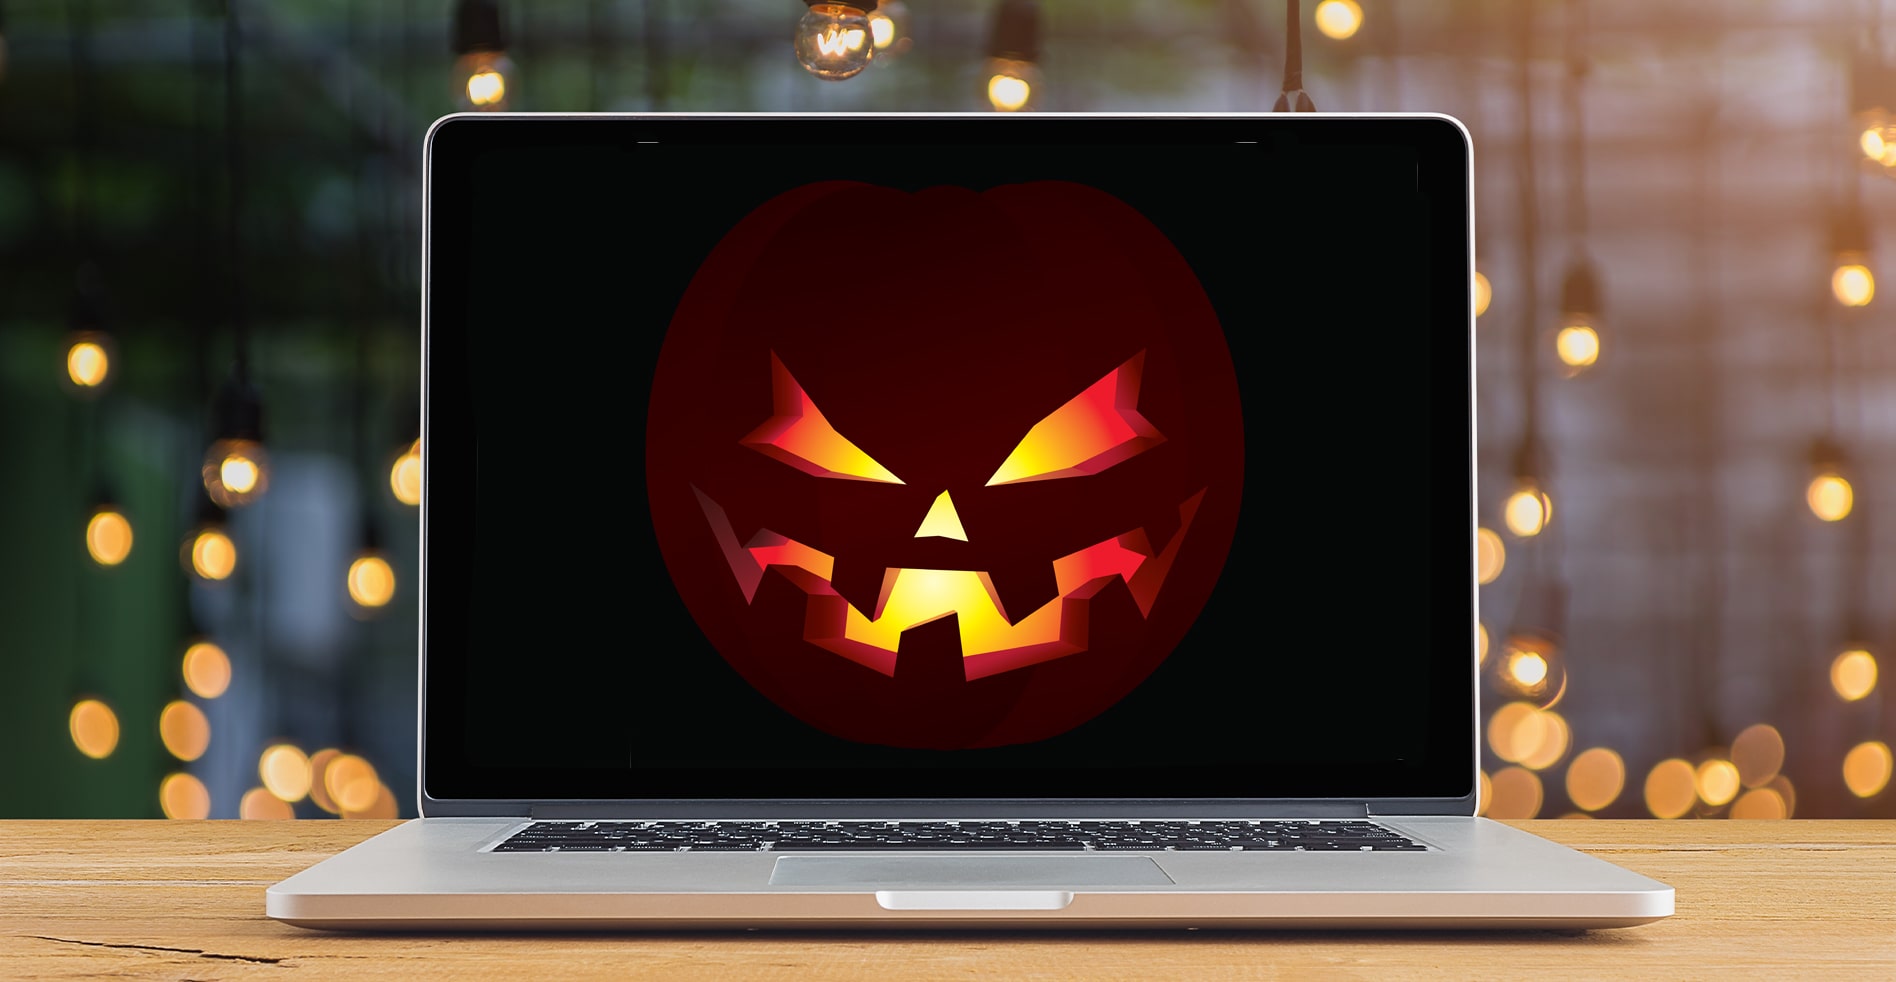 spooky jack-o'-lantern on laptop screen